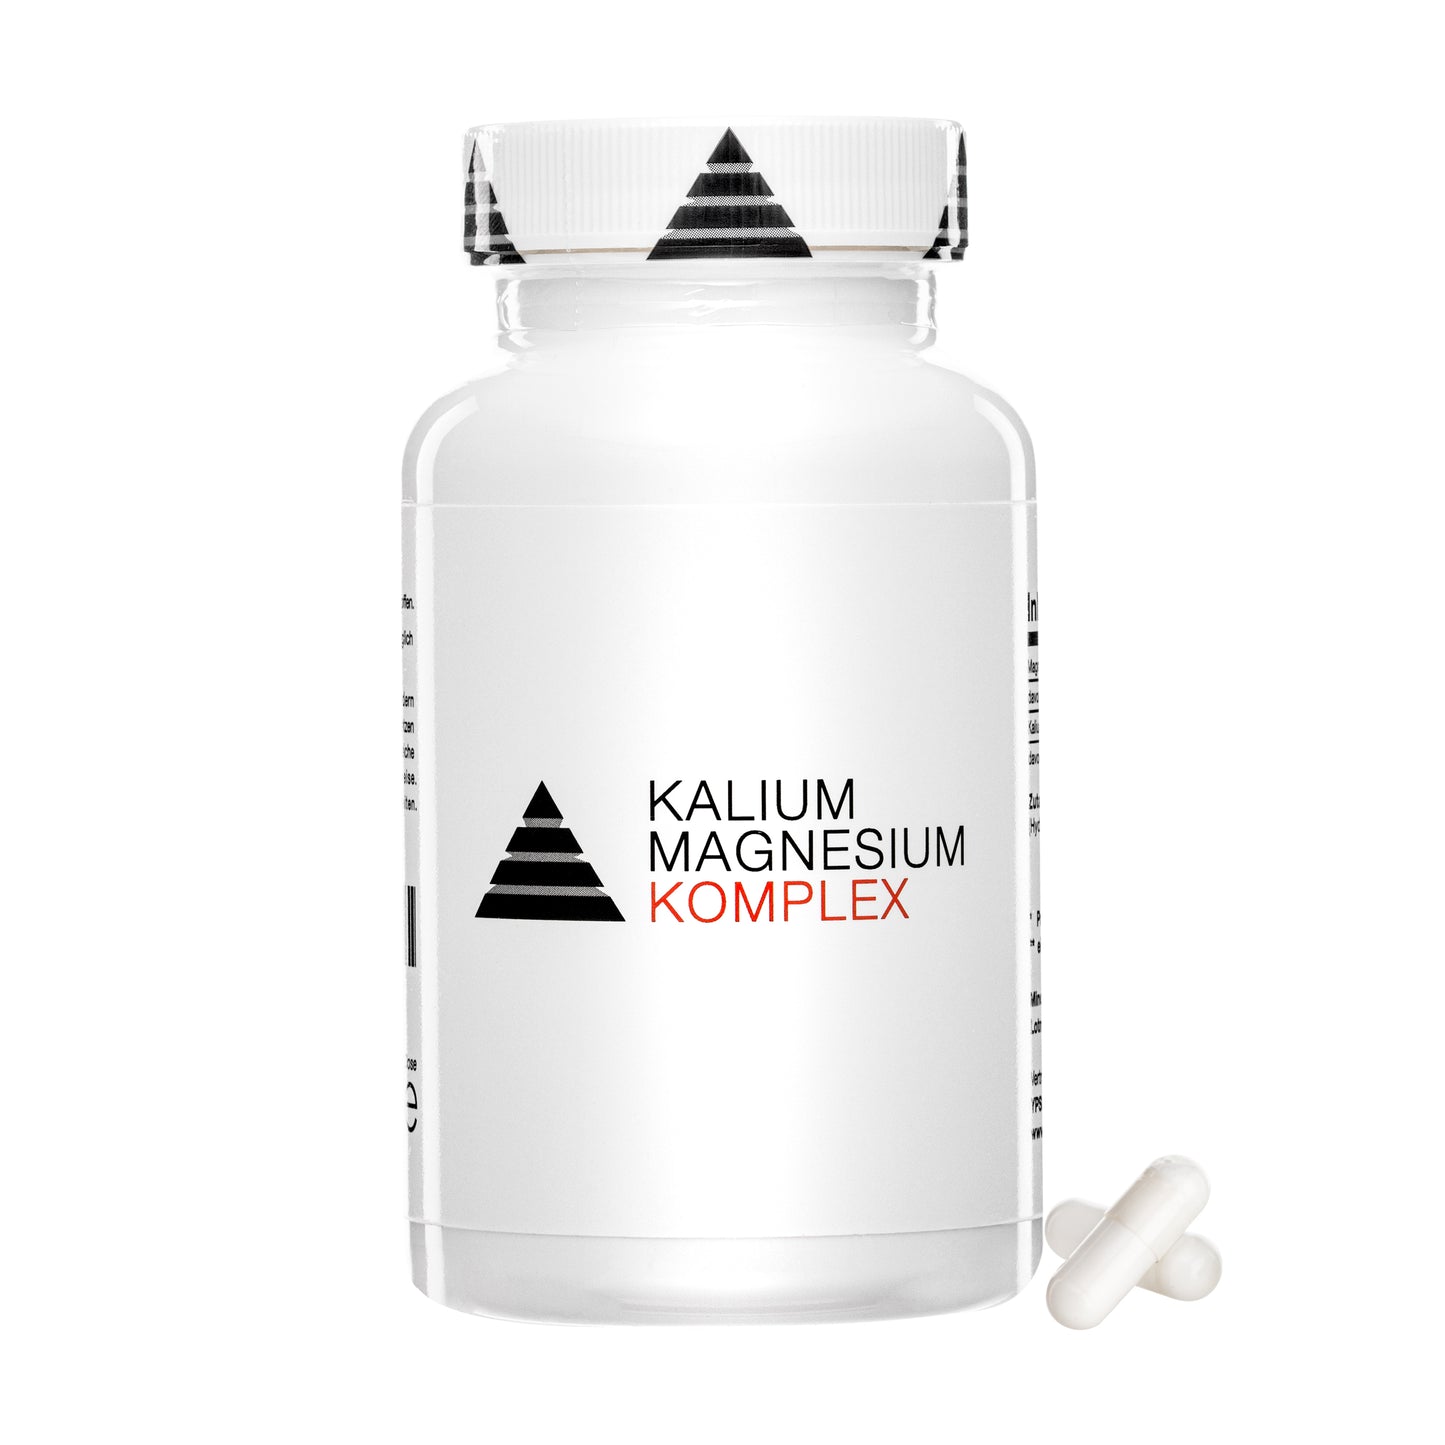 YPSI Kalium Magnesium Komplex (MHD 4/24)